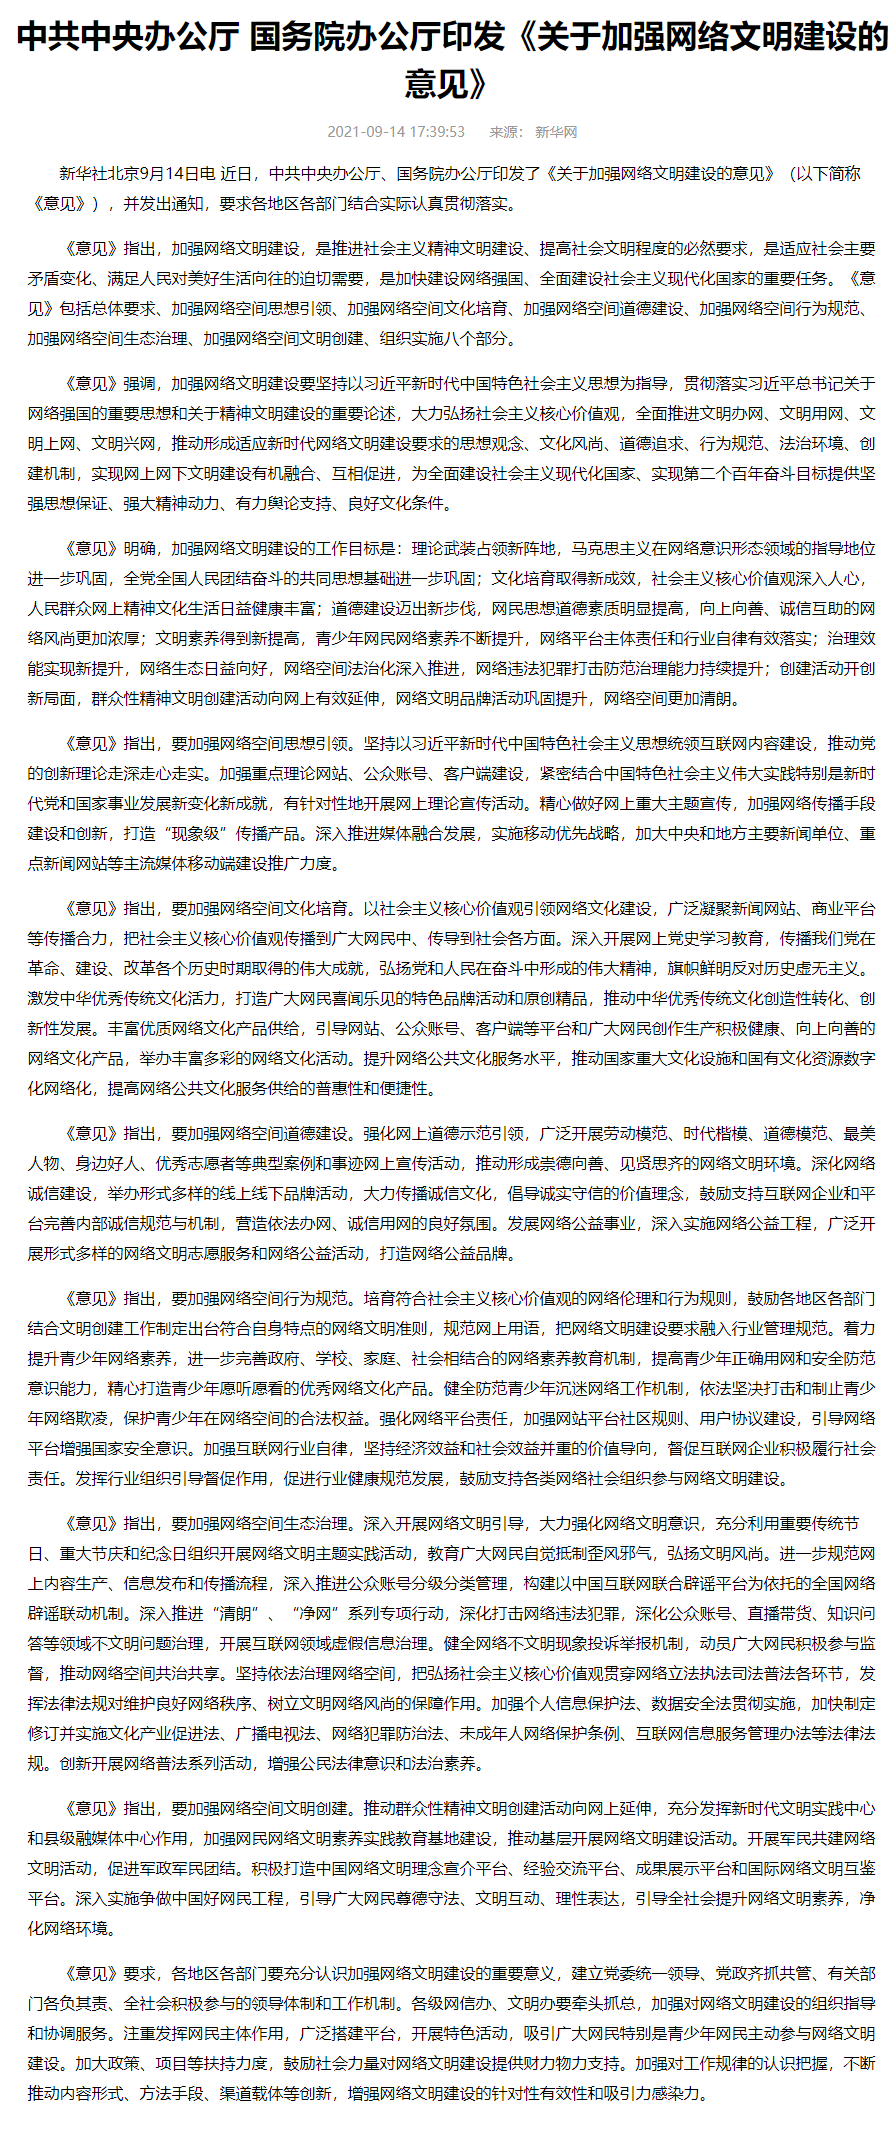 中共中央办公厅 国务院办公厅印发 关于加强网络文明建设的意见 